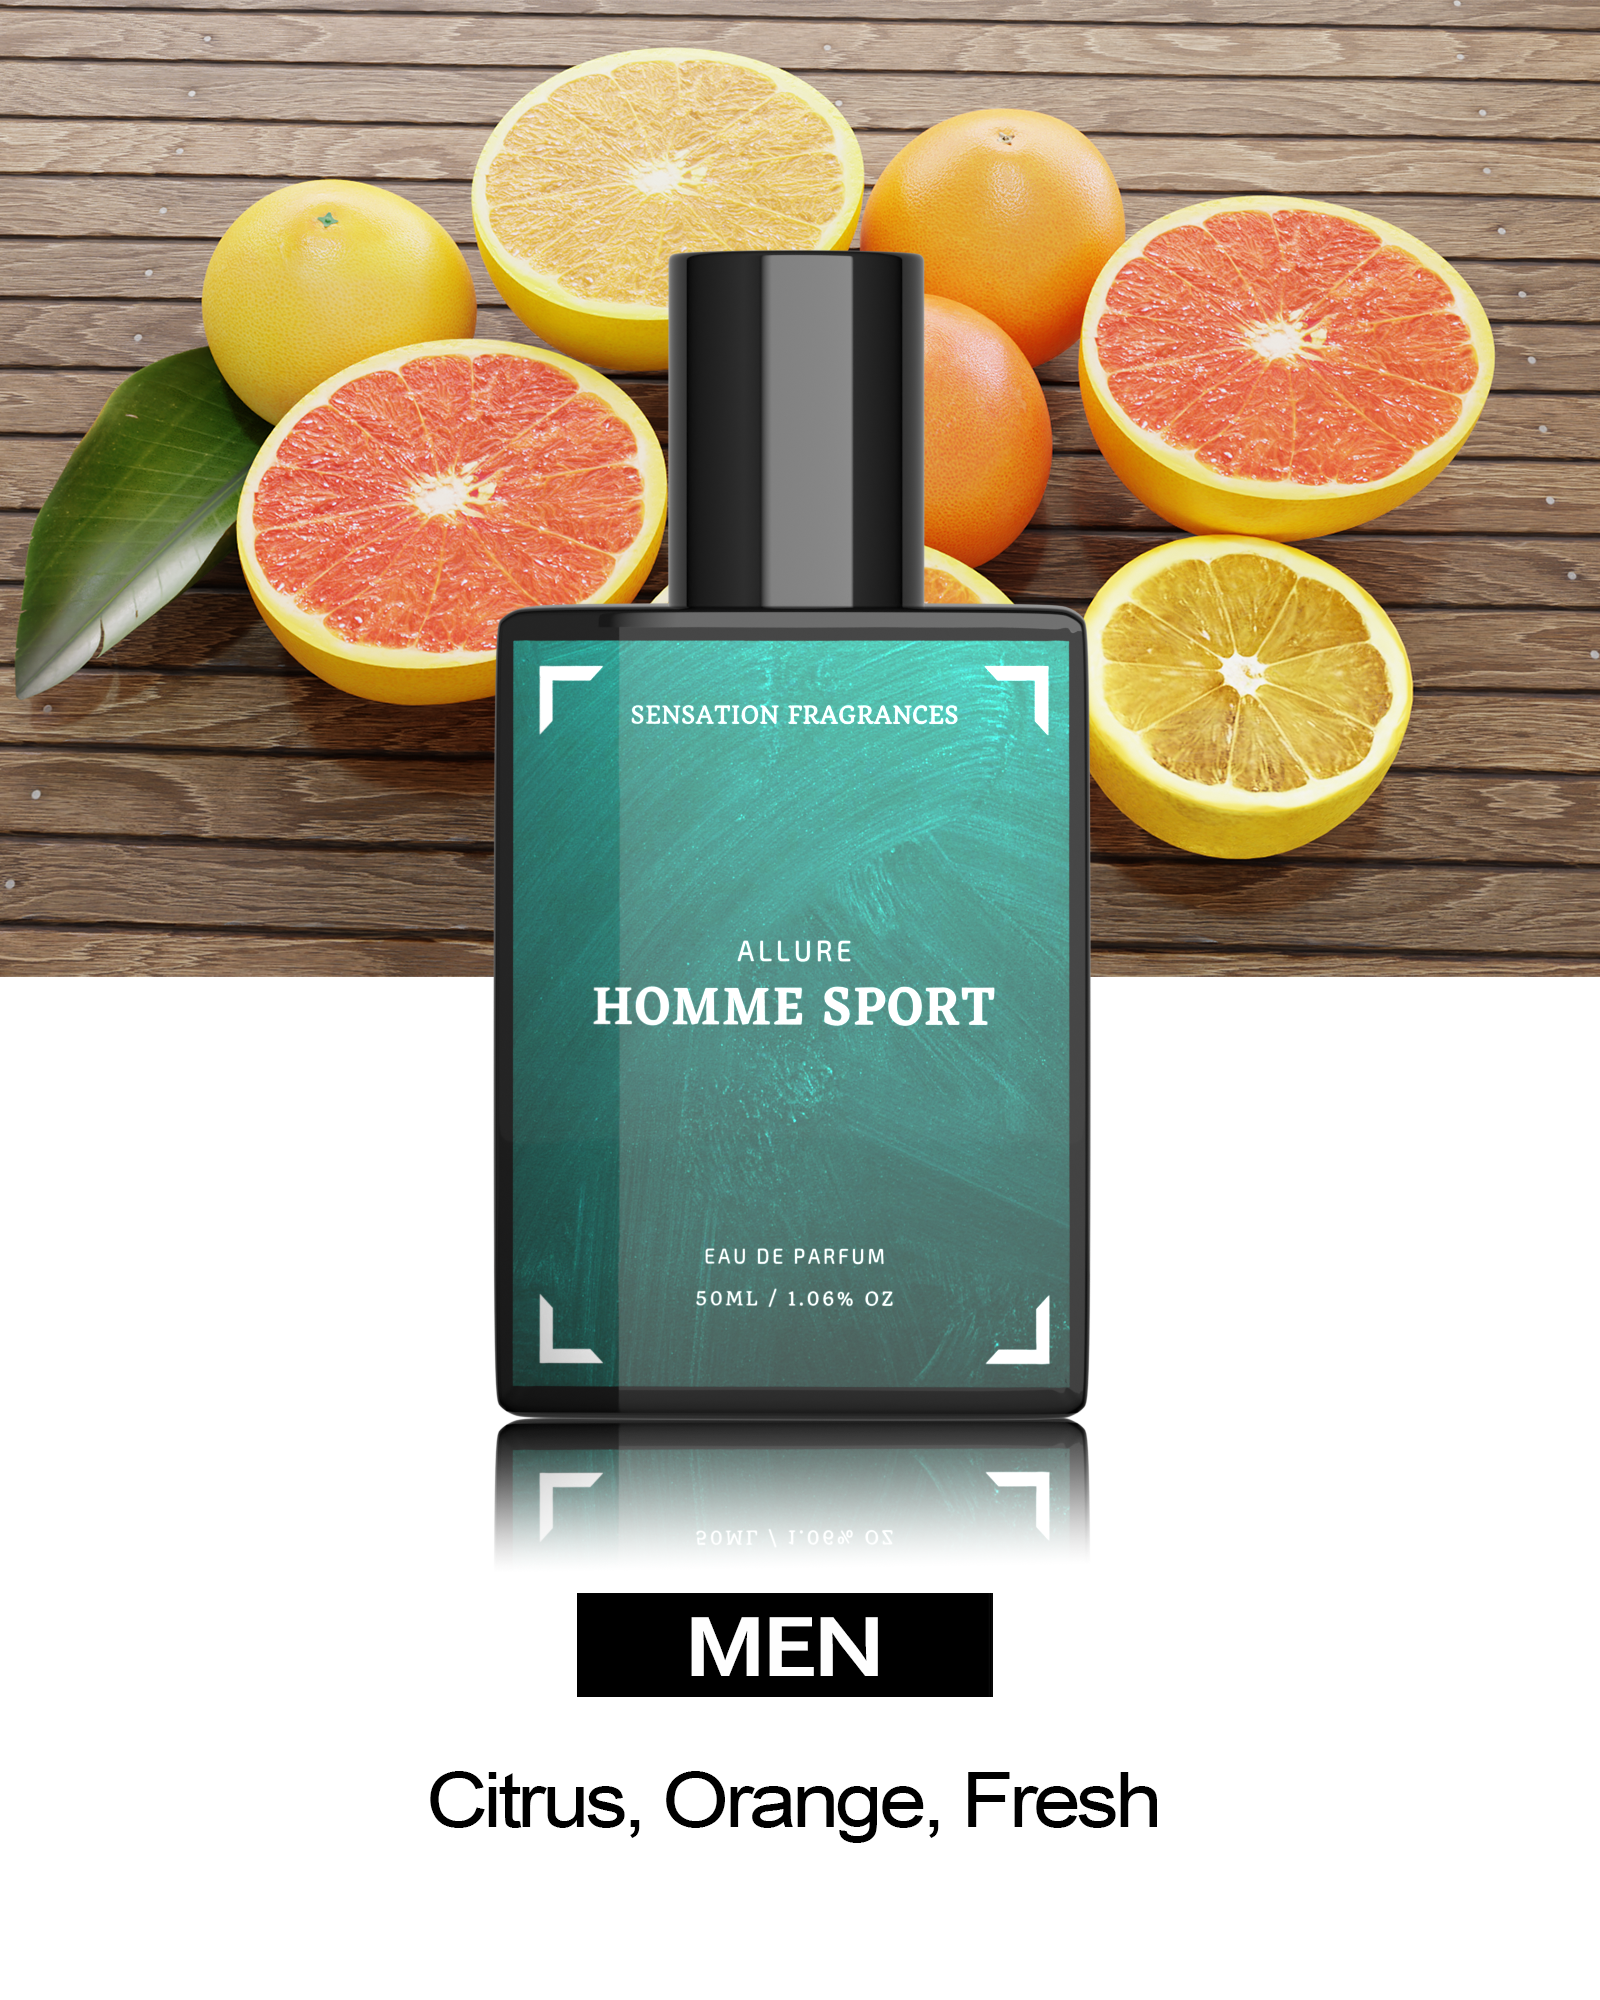 Our Impression of - ALLURE Homme Sport – Sensation Fragrances